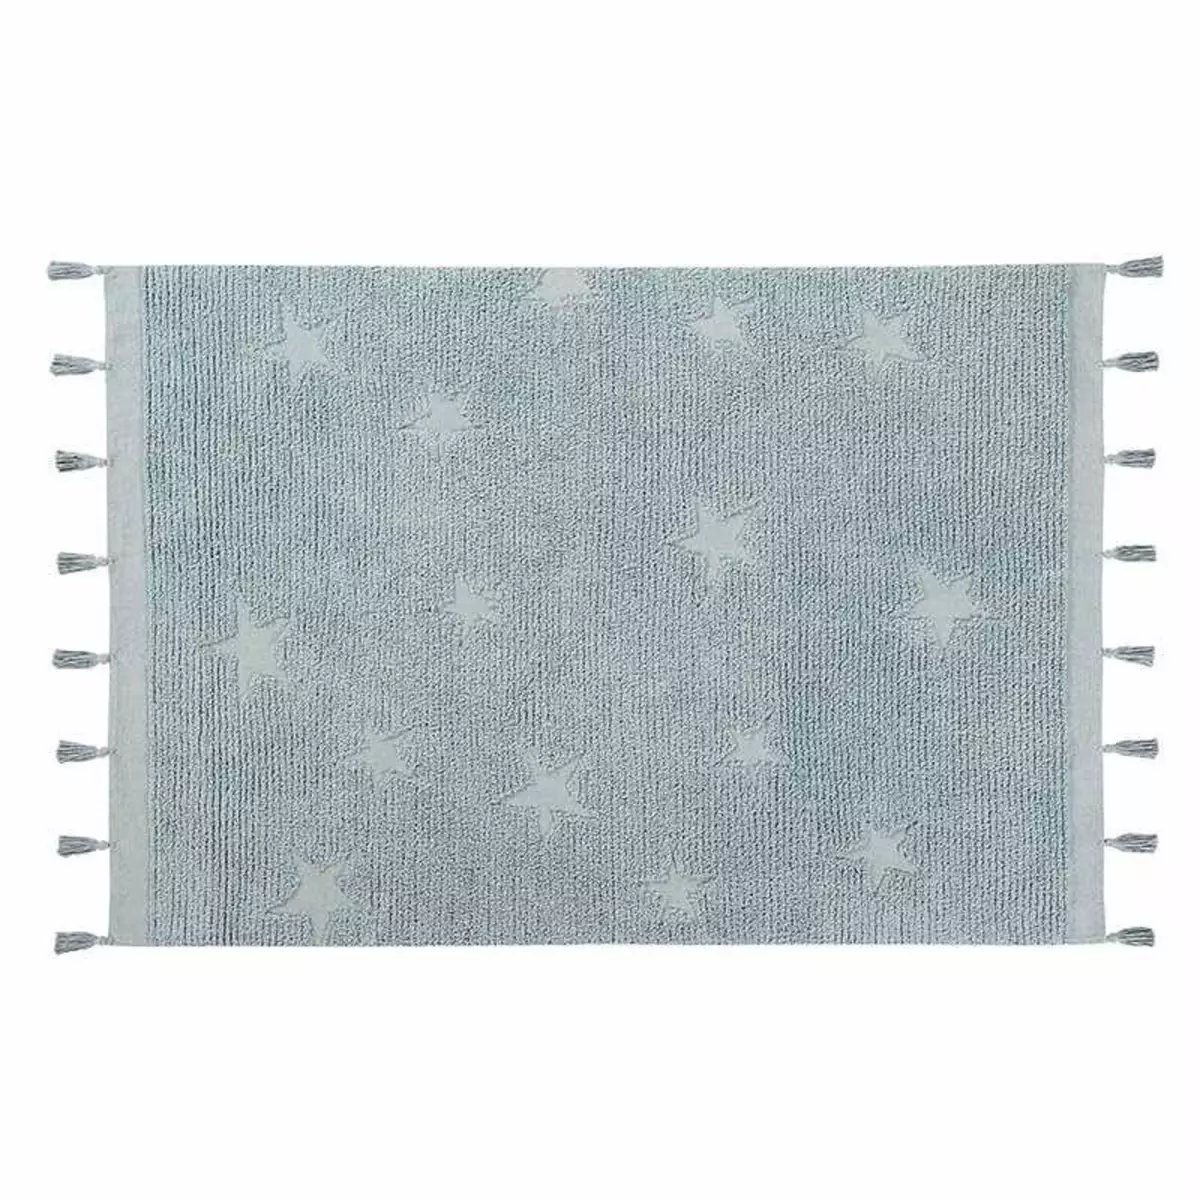 Lorena Canals Tapis coton motif star - bleu - 120 x 175